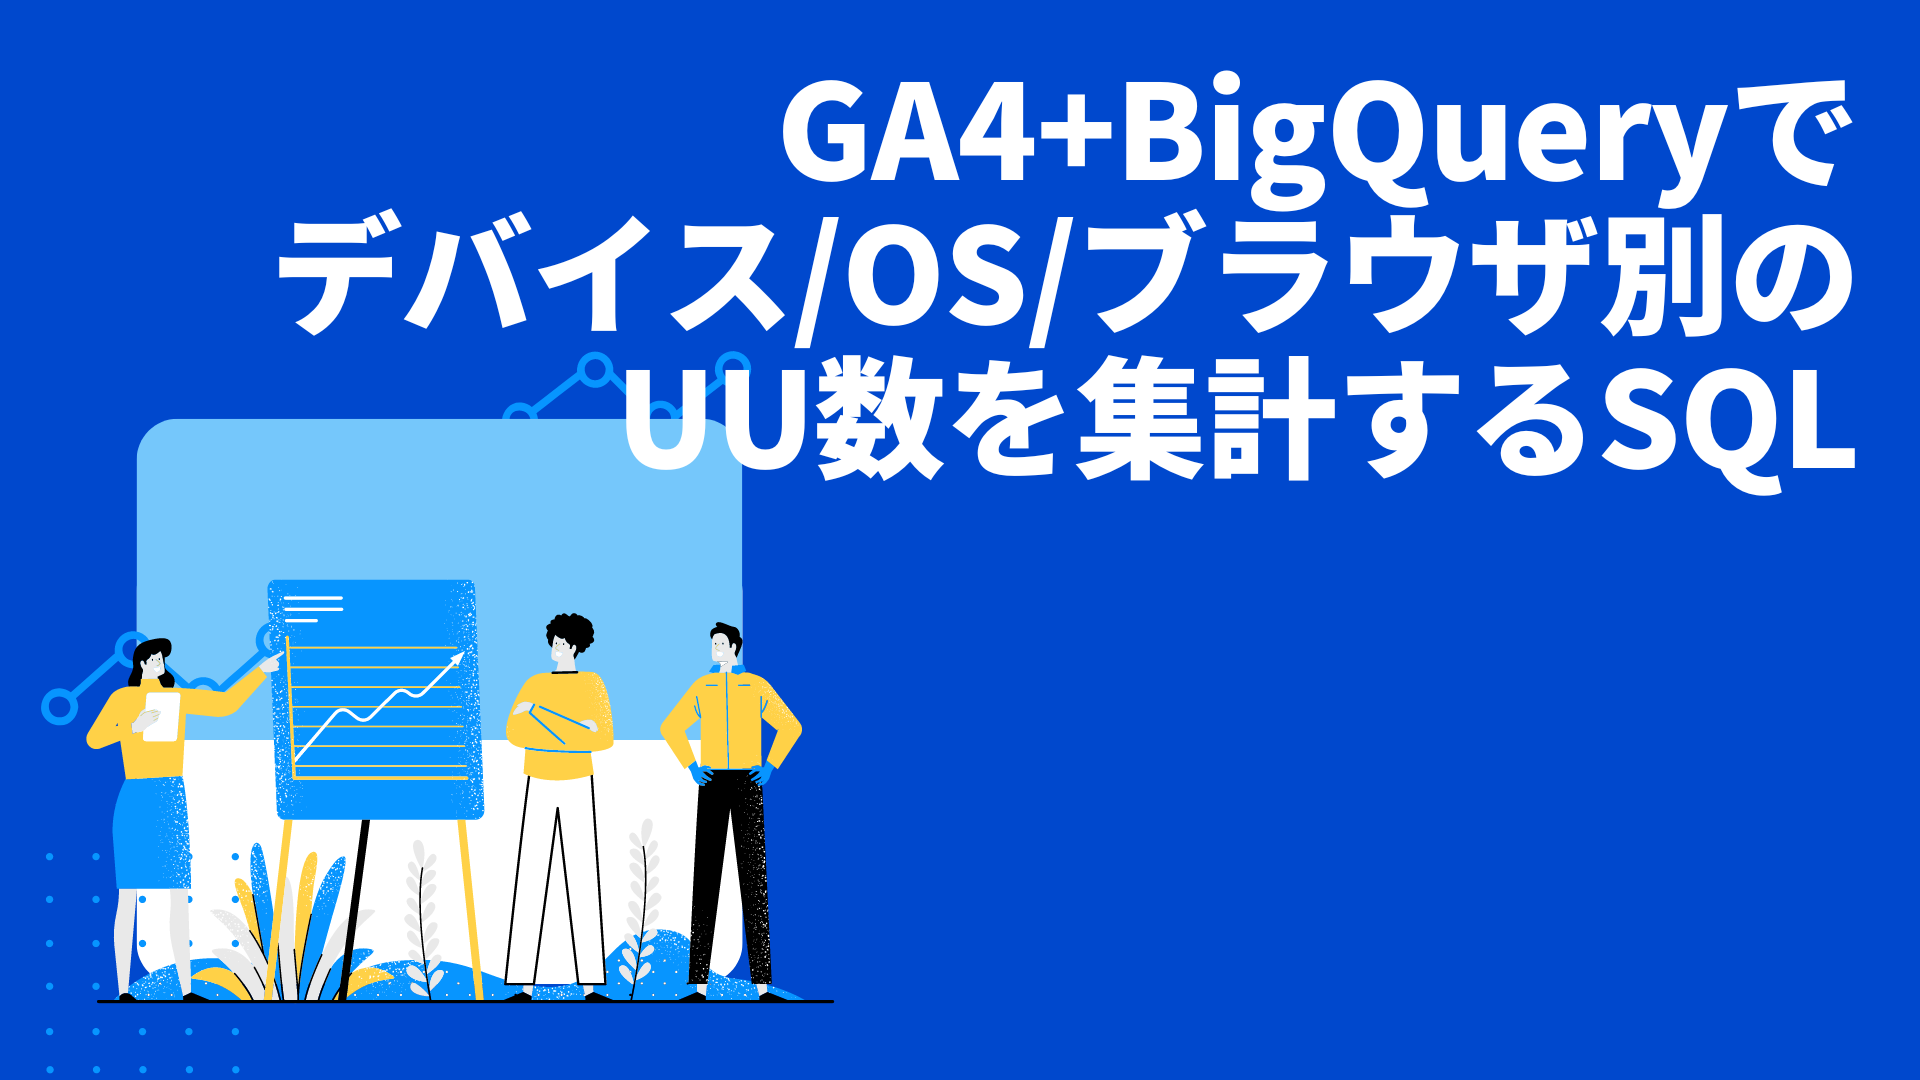 GA4+BigQueryでデバイス/OS/ブラウザ別のUU数を集計するSQL